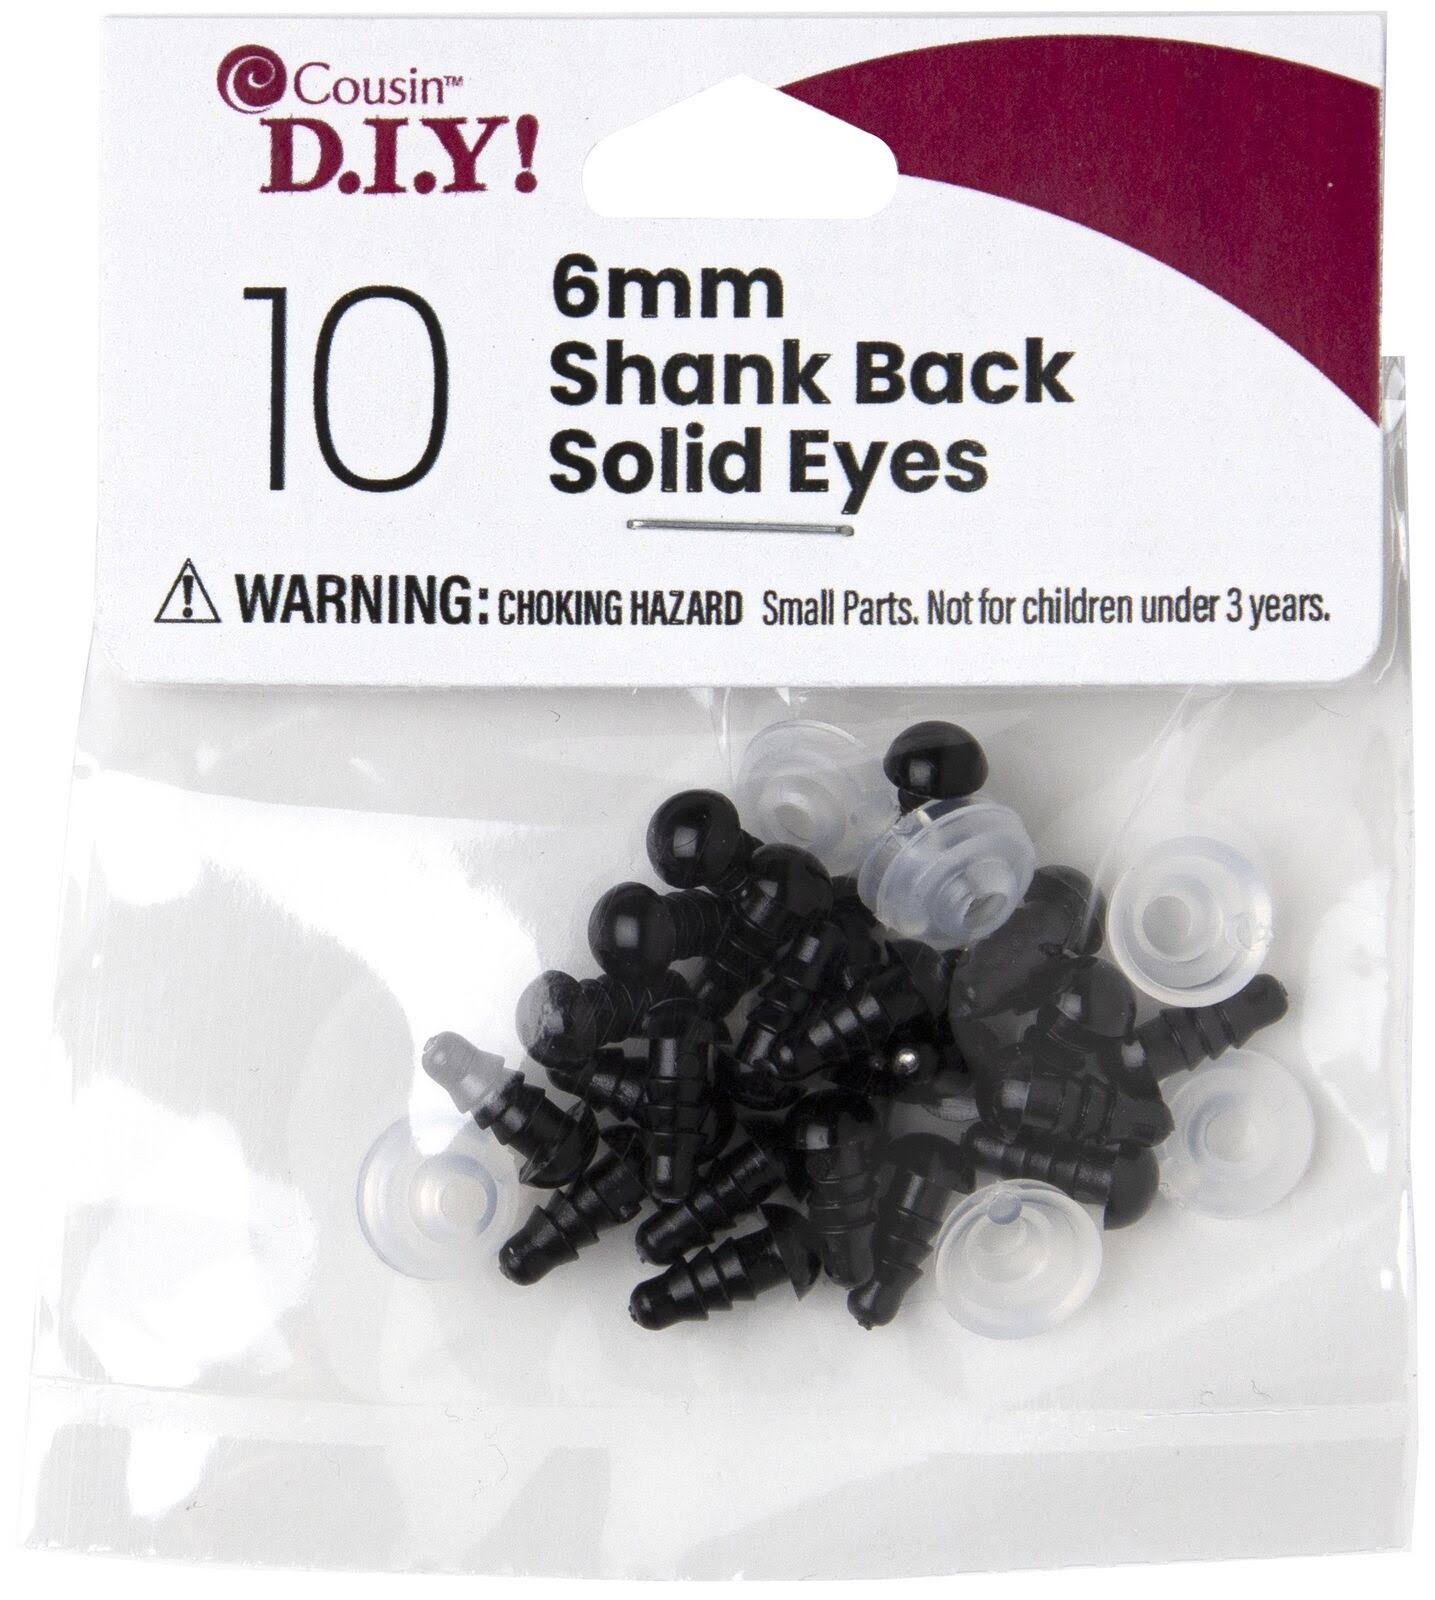 Cousin DIY Shank Back Solid Eyes 6mm 10PC, Black